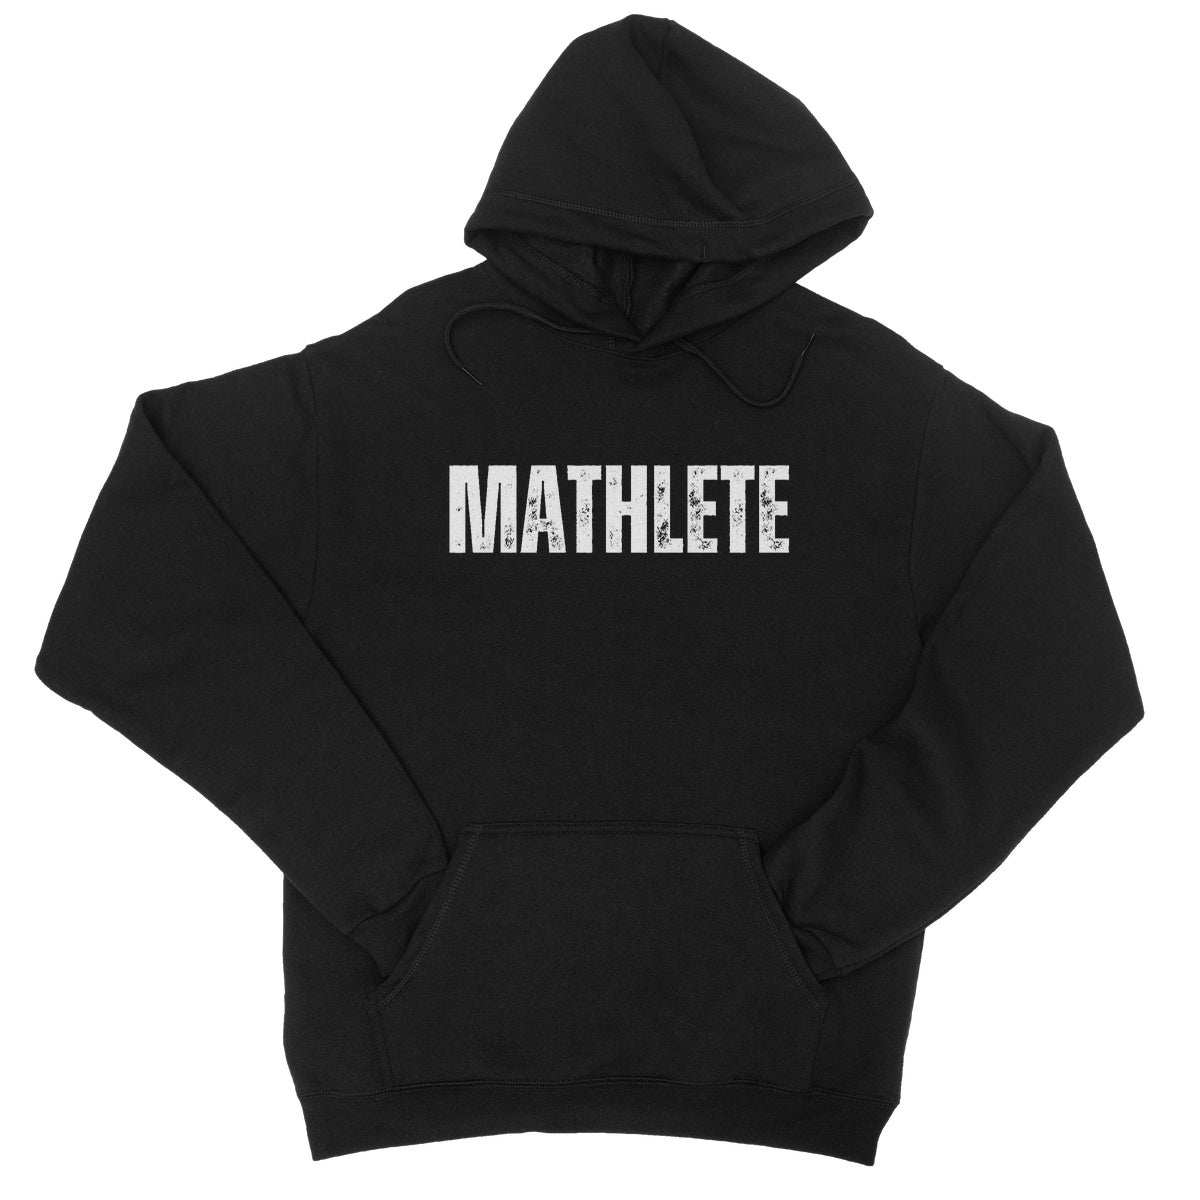 mathlete hoodie black